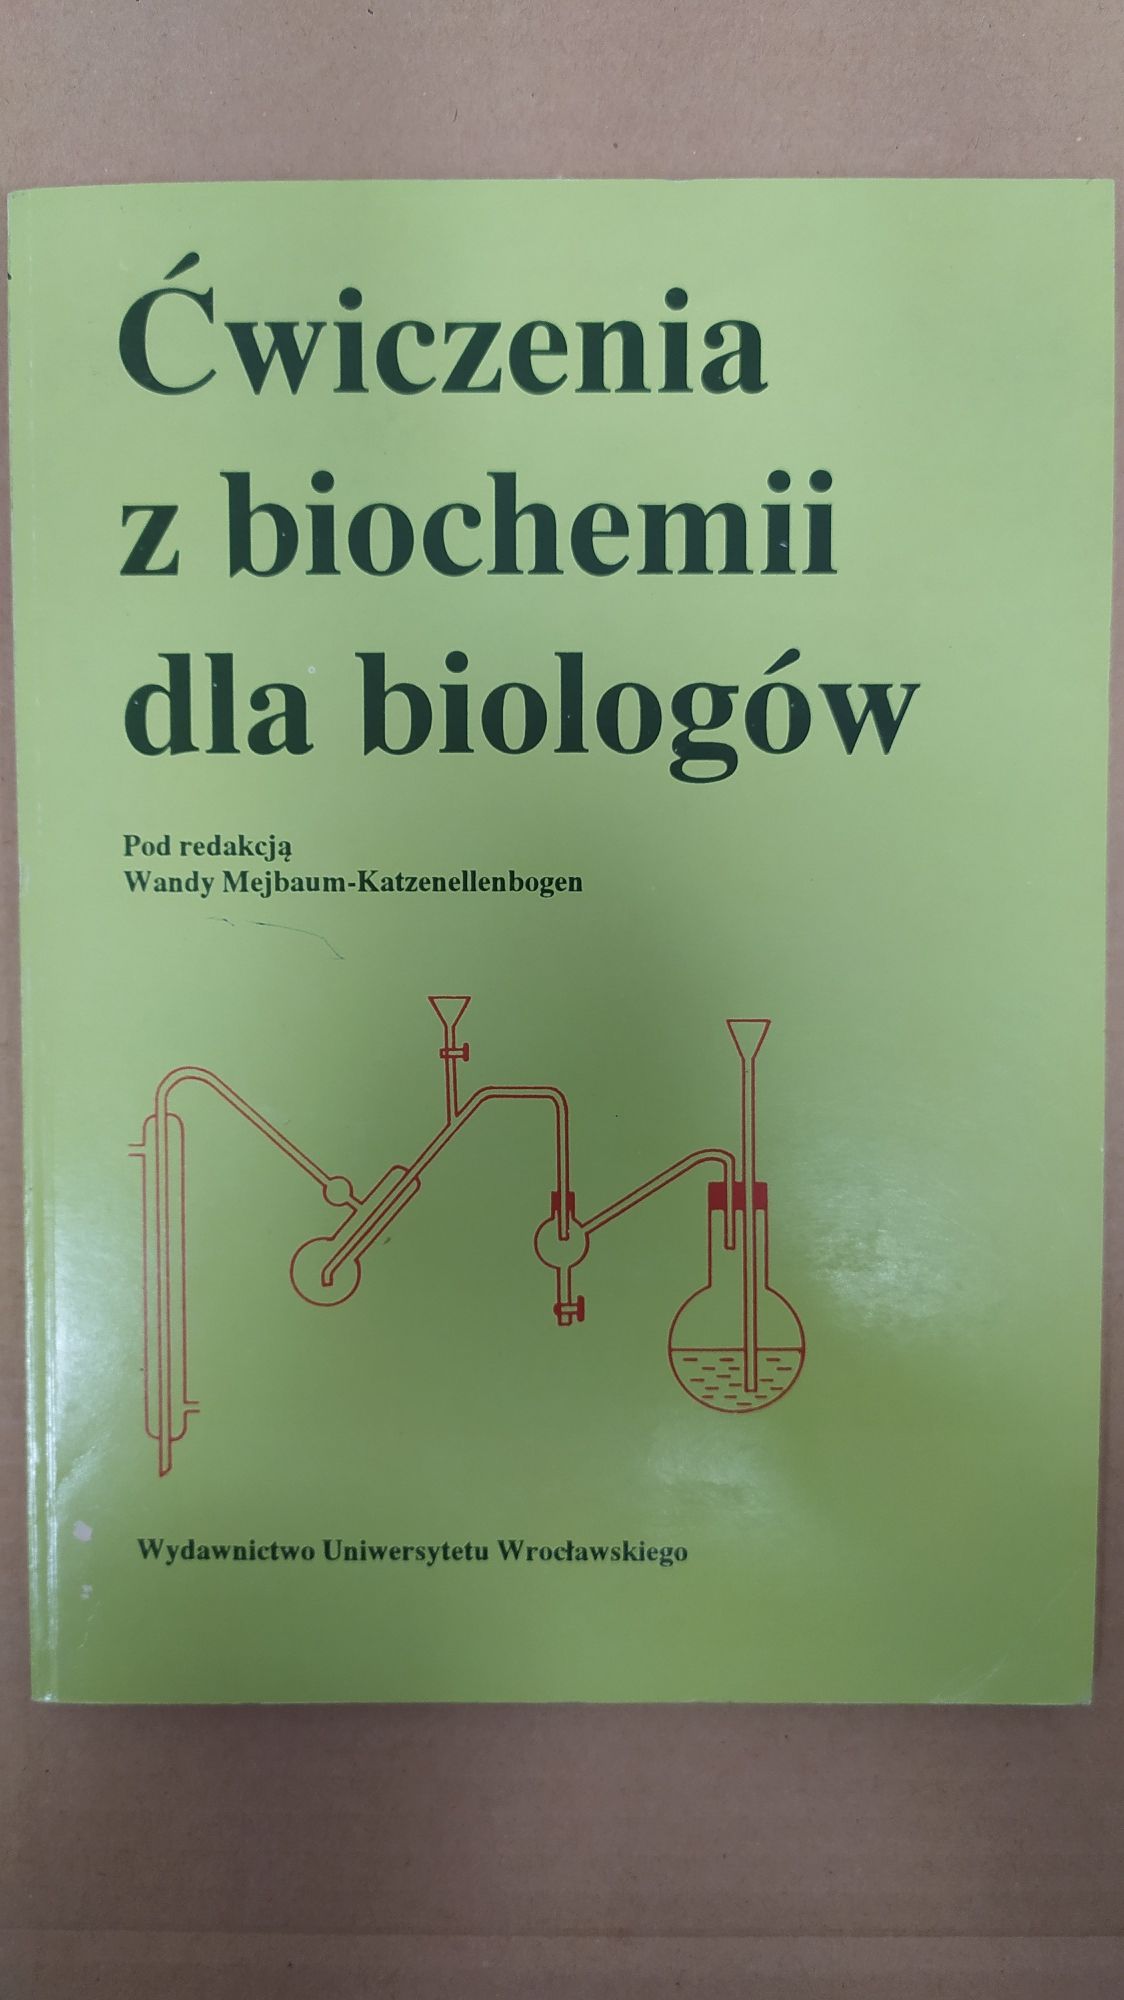 Ćwiczenia z biochemii dla biologów - W. Mejbaum - Katzenellenbogen